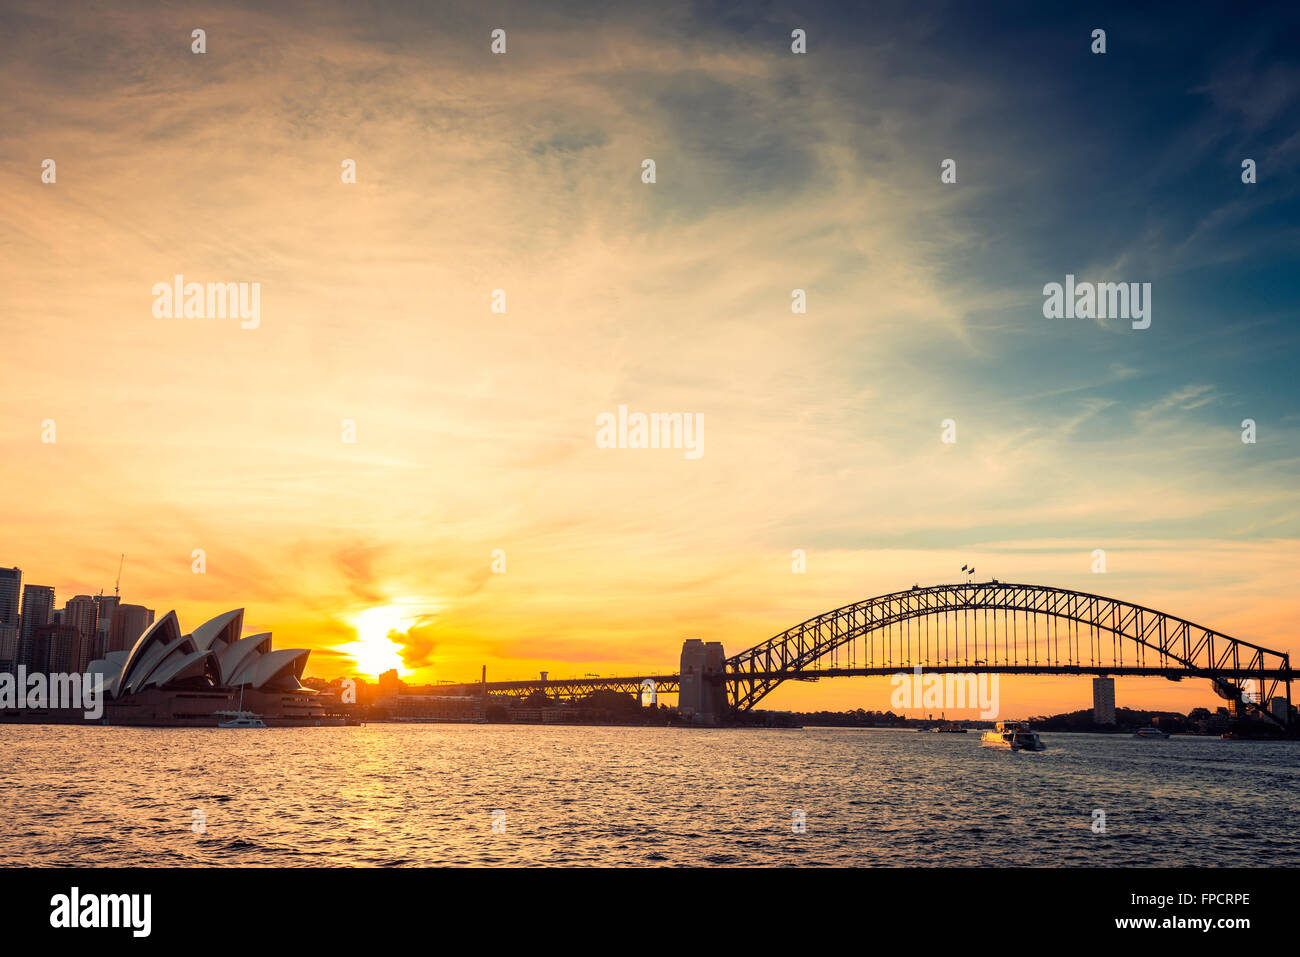 La città di Sydney silhouette al tramonto. Cross-processing e colorati applicati effetti Foto Stock